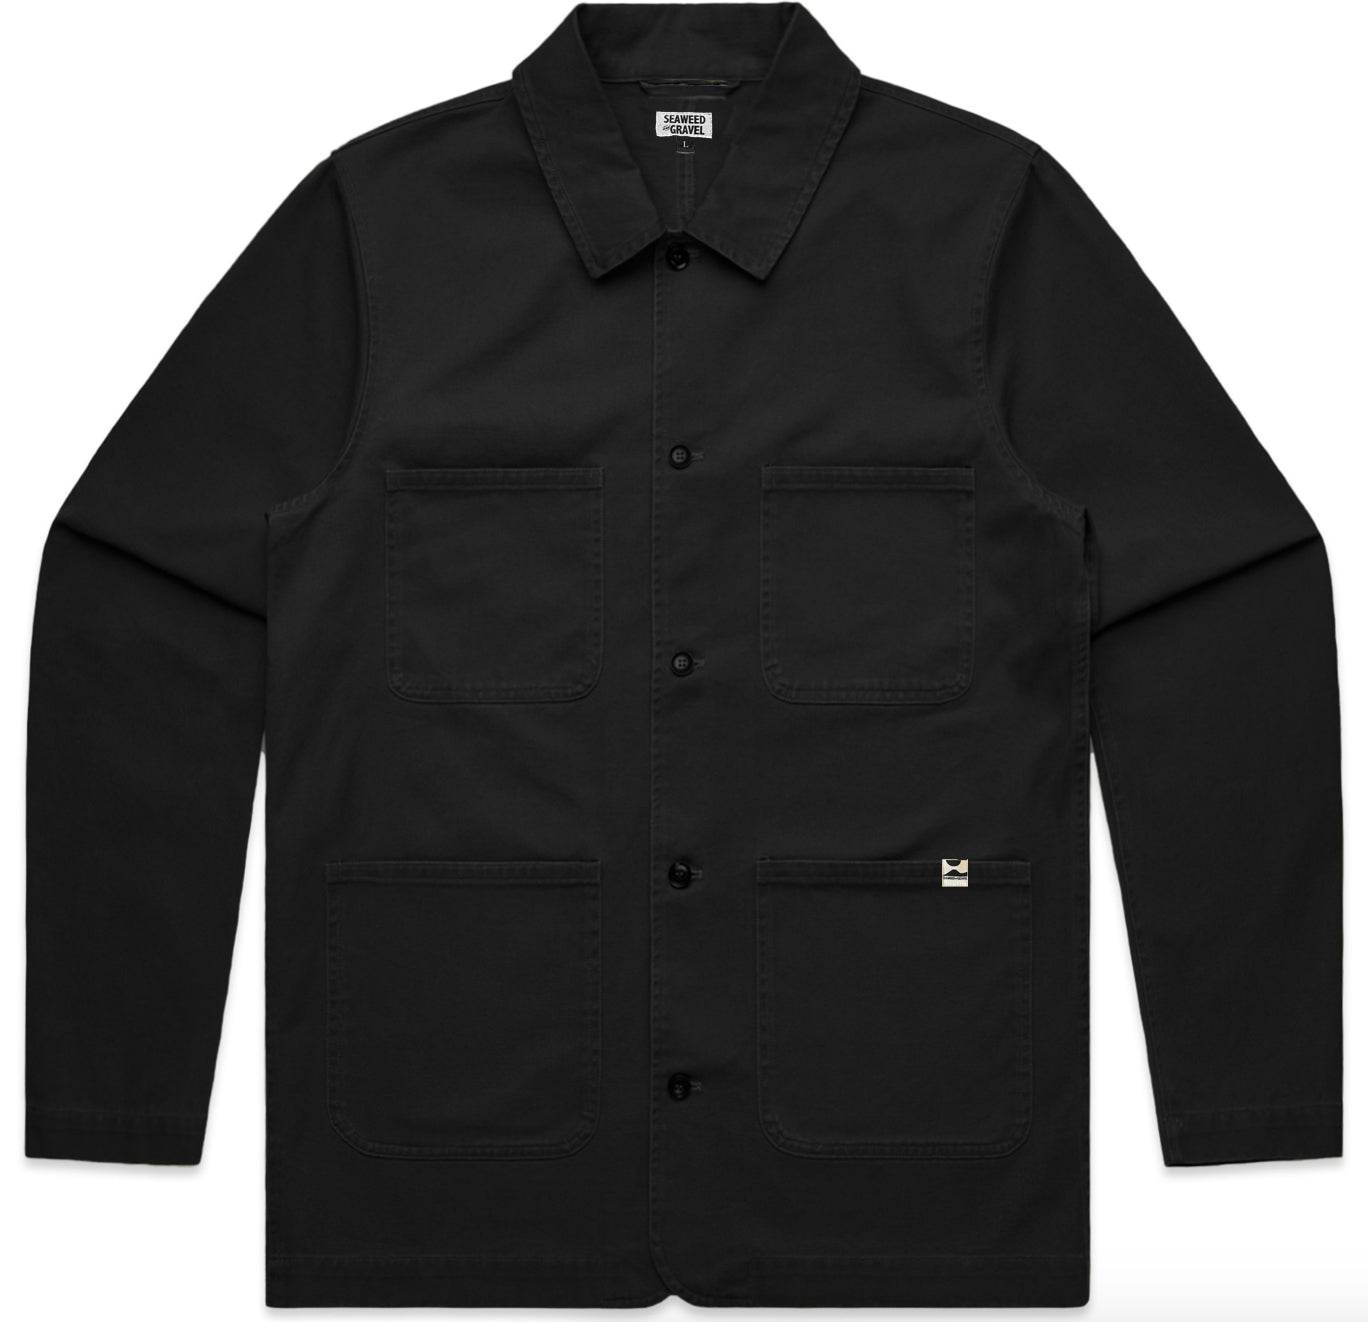 Jacket Chore Coat Twill by S&G Black